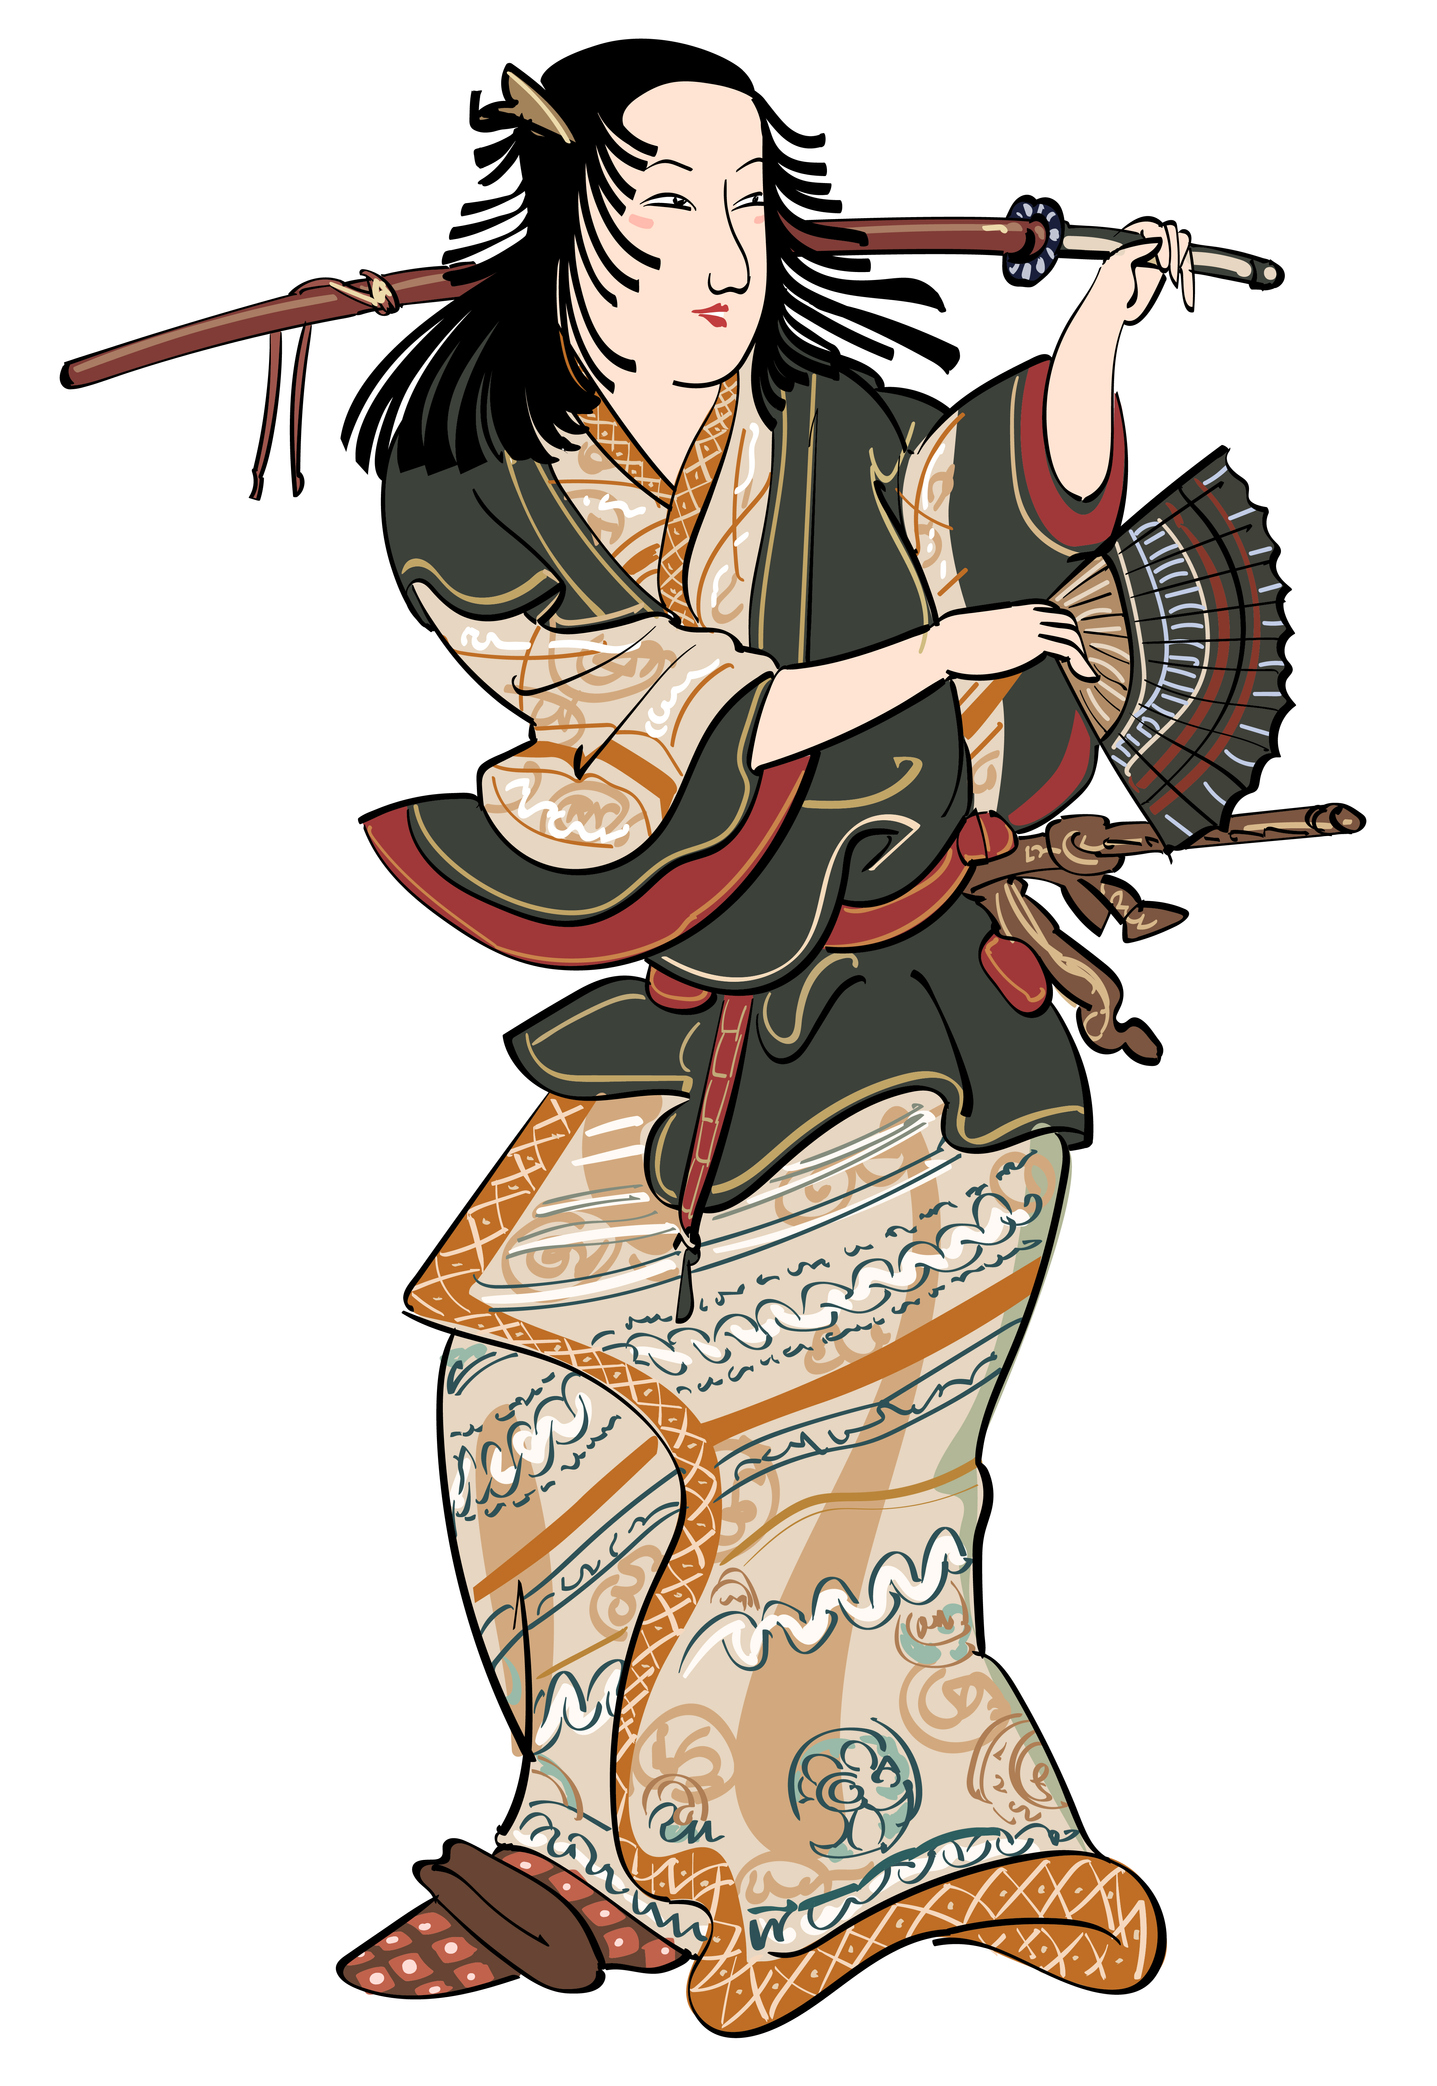 <p><strong>&bdquo;Меч за косене на трева&quot;</strong></p>

<p>Мечът &bdquo;Меч за косене на трева&quot; е един от най-важните митични артефакти в Япония. Легендата разказва, че мечът е намерен в опашката на дракон от Сусаноо, бога на бурята. Когато в крайна сметка той бил предаден на великия воин Ямато, той открил, че острието му позволява да контролира и посоката на вятъра.</p>